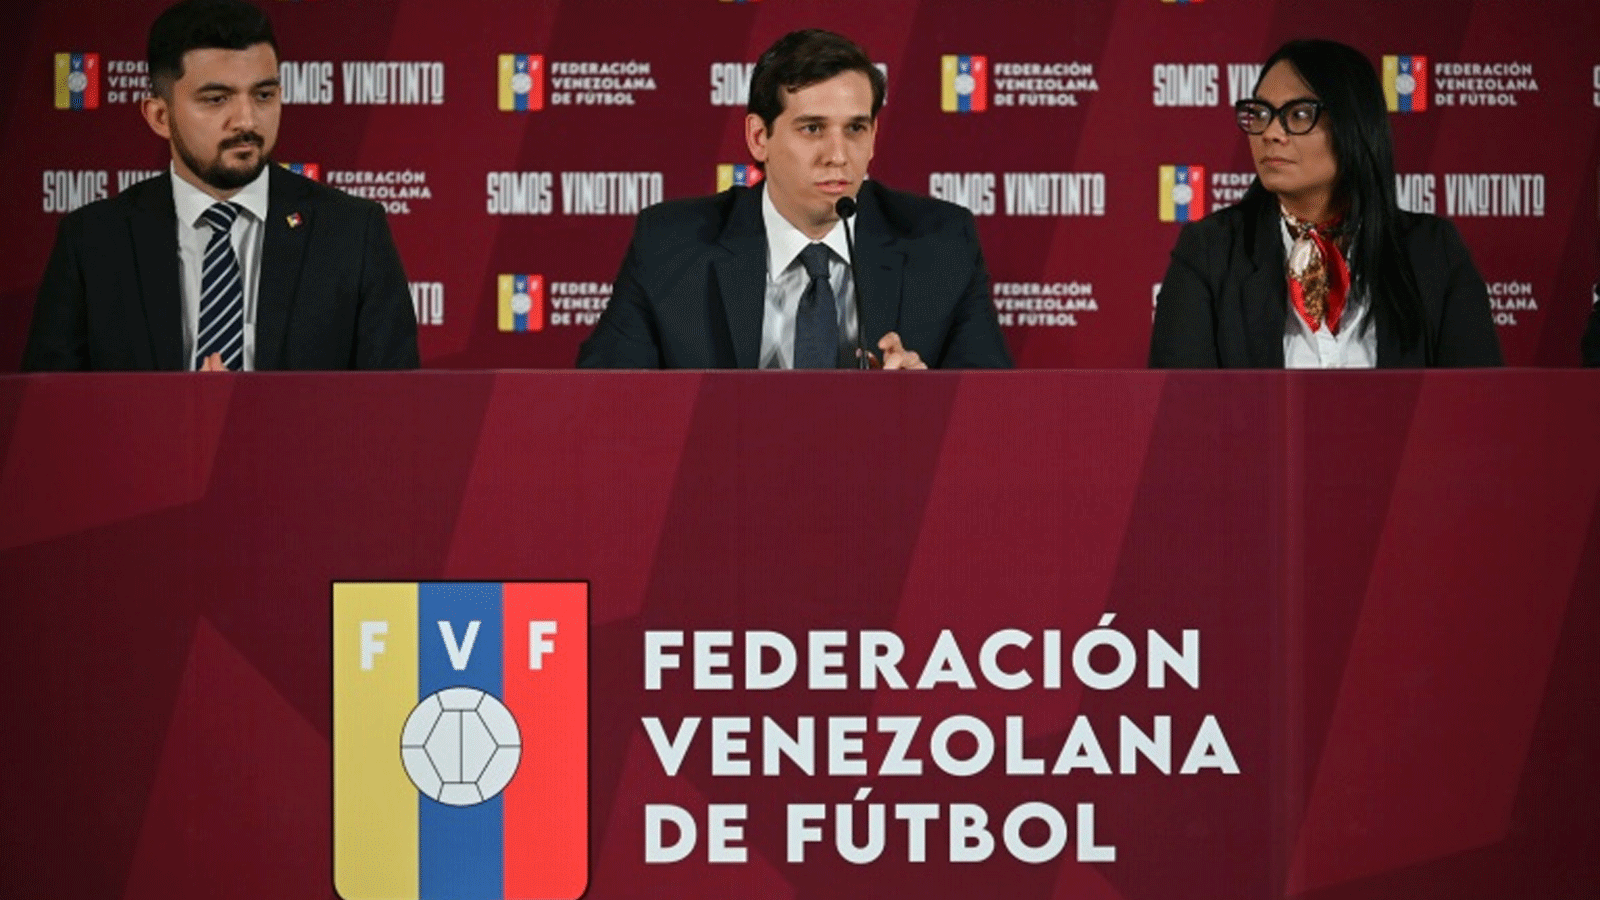 رئيس الاتحاد الفنزويلي لكرة القدم خورخي خيمينيس (وسط) خلال مؤتمر صحافي في كاراكاس، فنزويلا للإعلان عن تعيين الأرجنتيني فرناندو